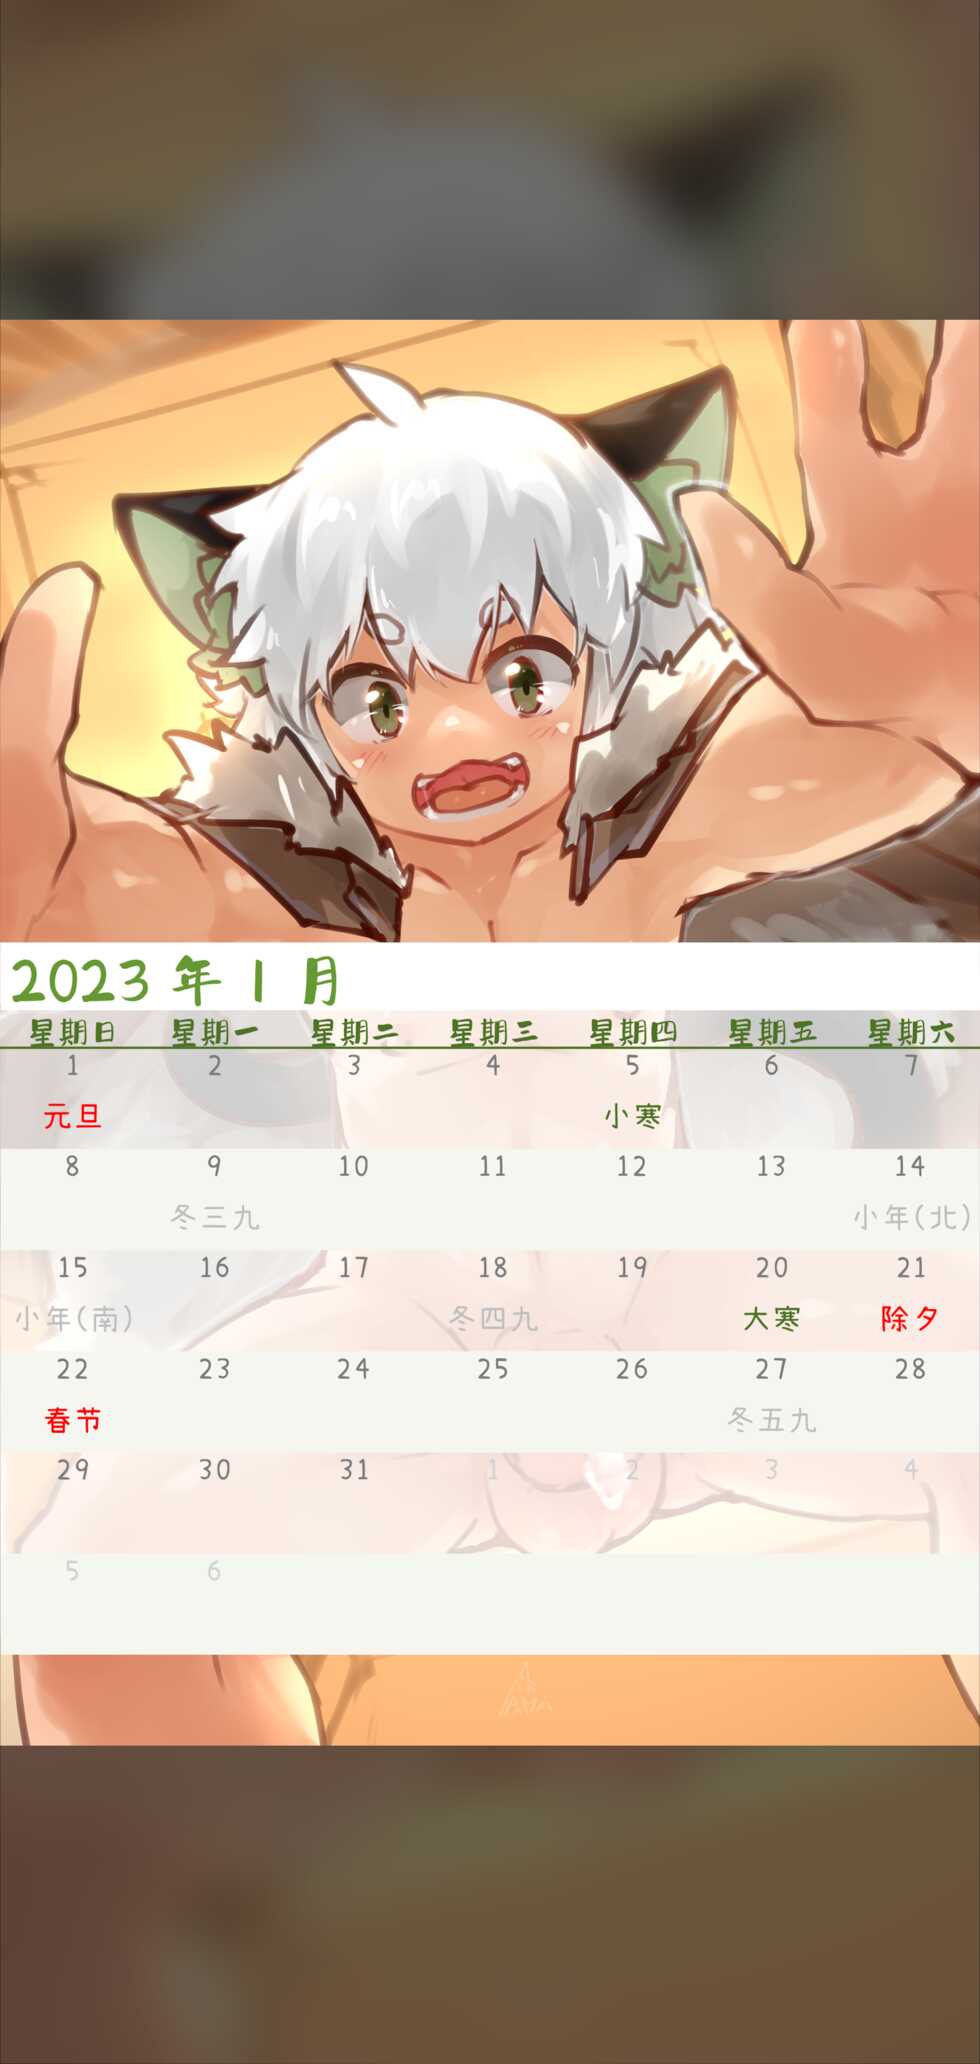 [Suka Genmei] Luo Xiaohei Calendar - Page 4